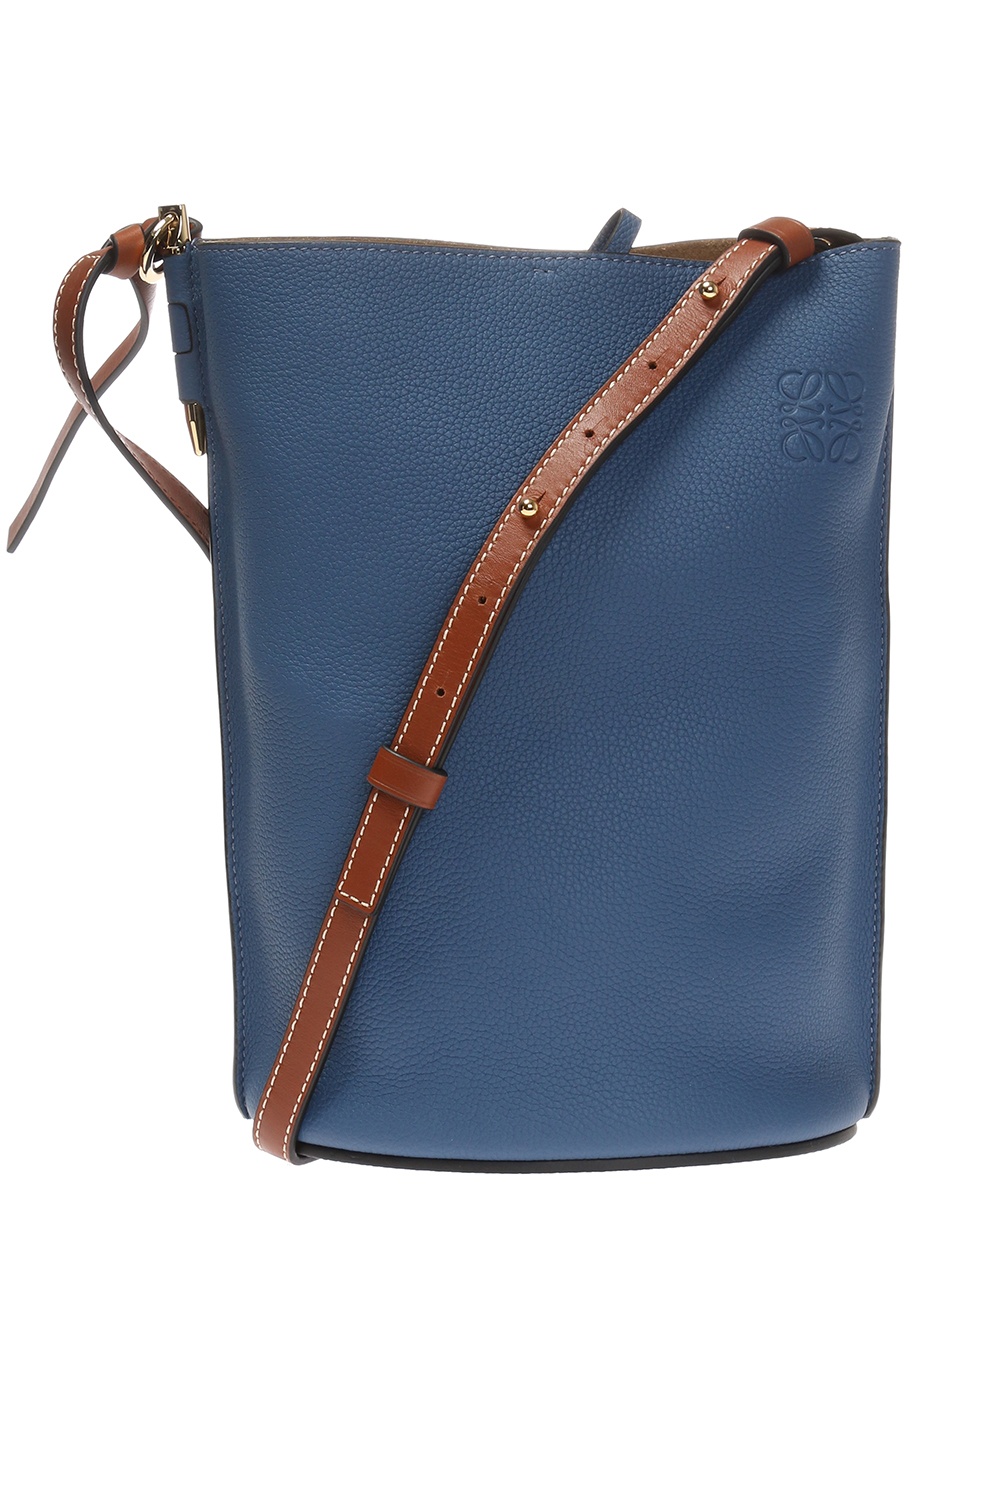 Loewe Gate Anagram Bucket Bag - Blue Bucket Bags, Handbags - LOW47954